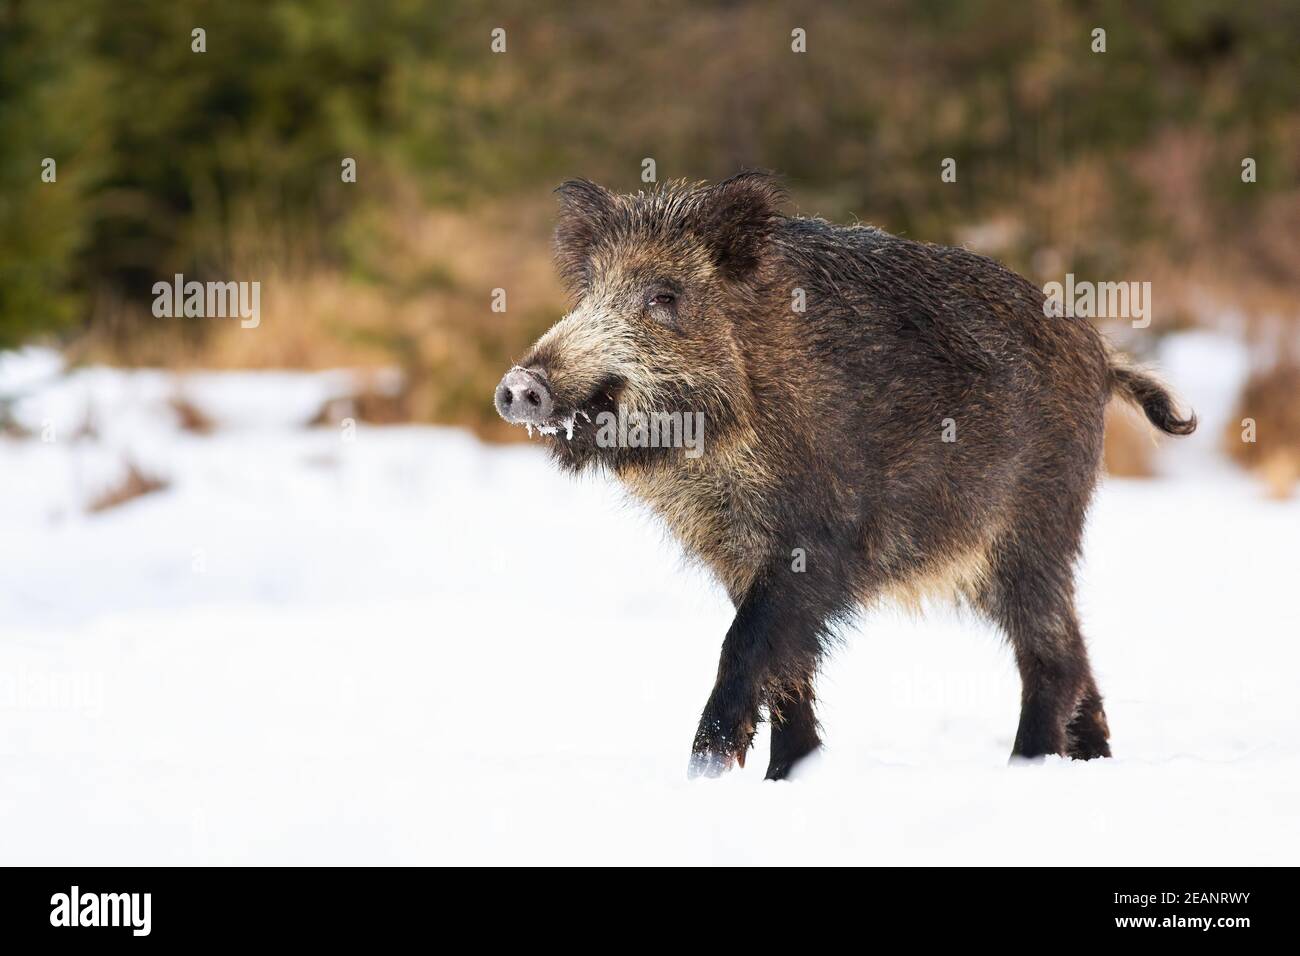 Wild boar walking on snowy meadow in wintertime nature Stock Photo